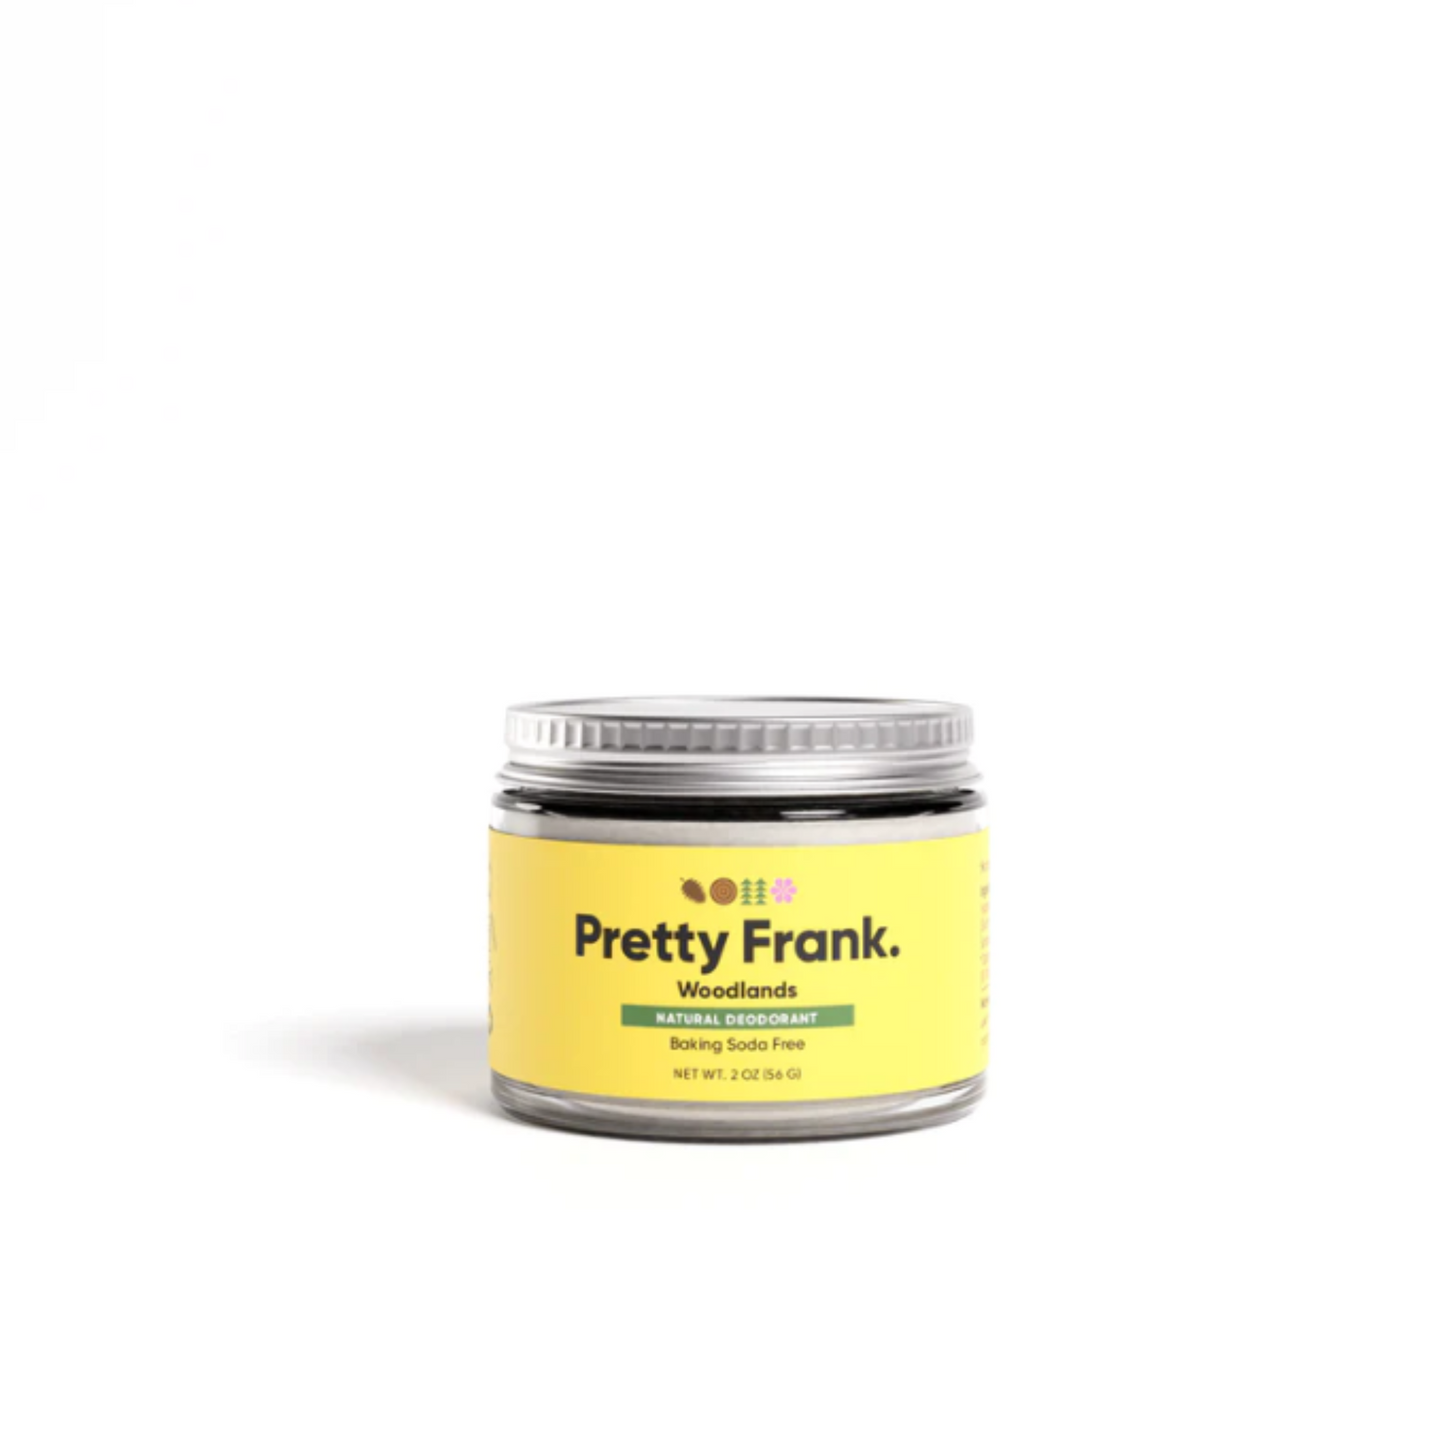 Pretty Frank Woodlands Natural Deodorant (2 oz) #10085997